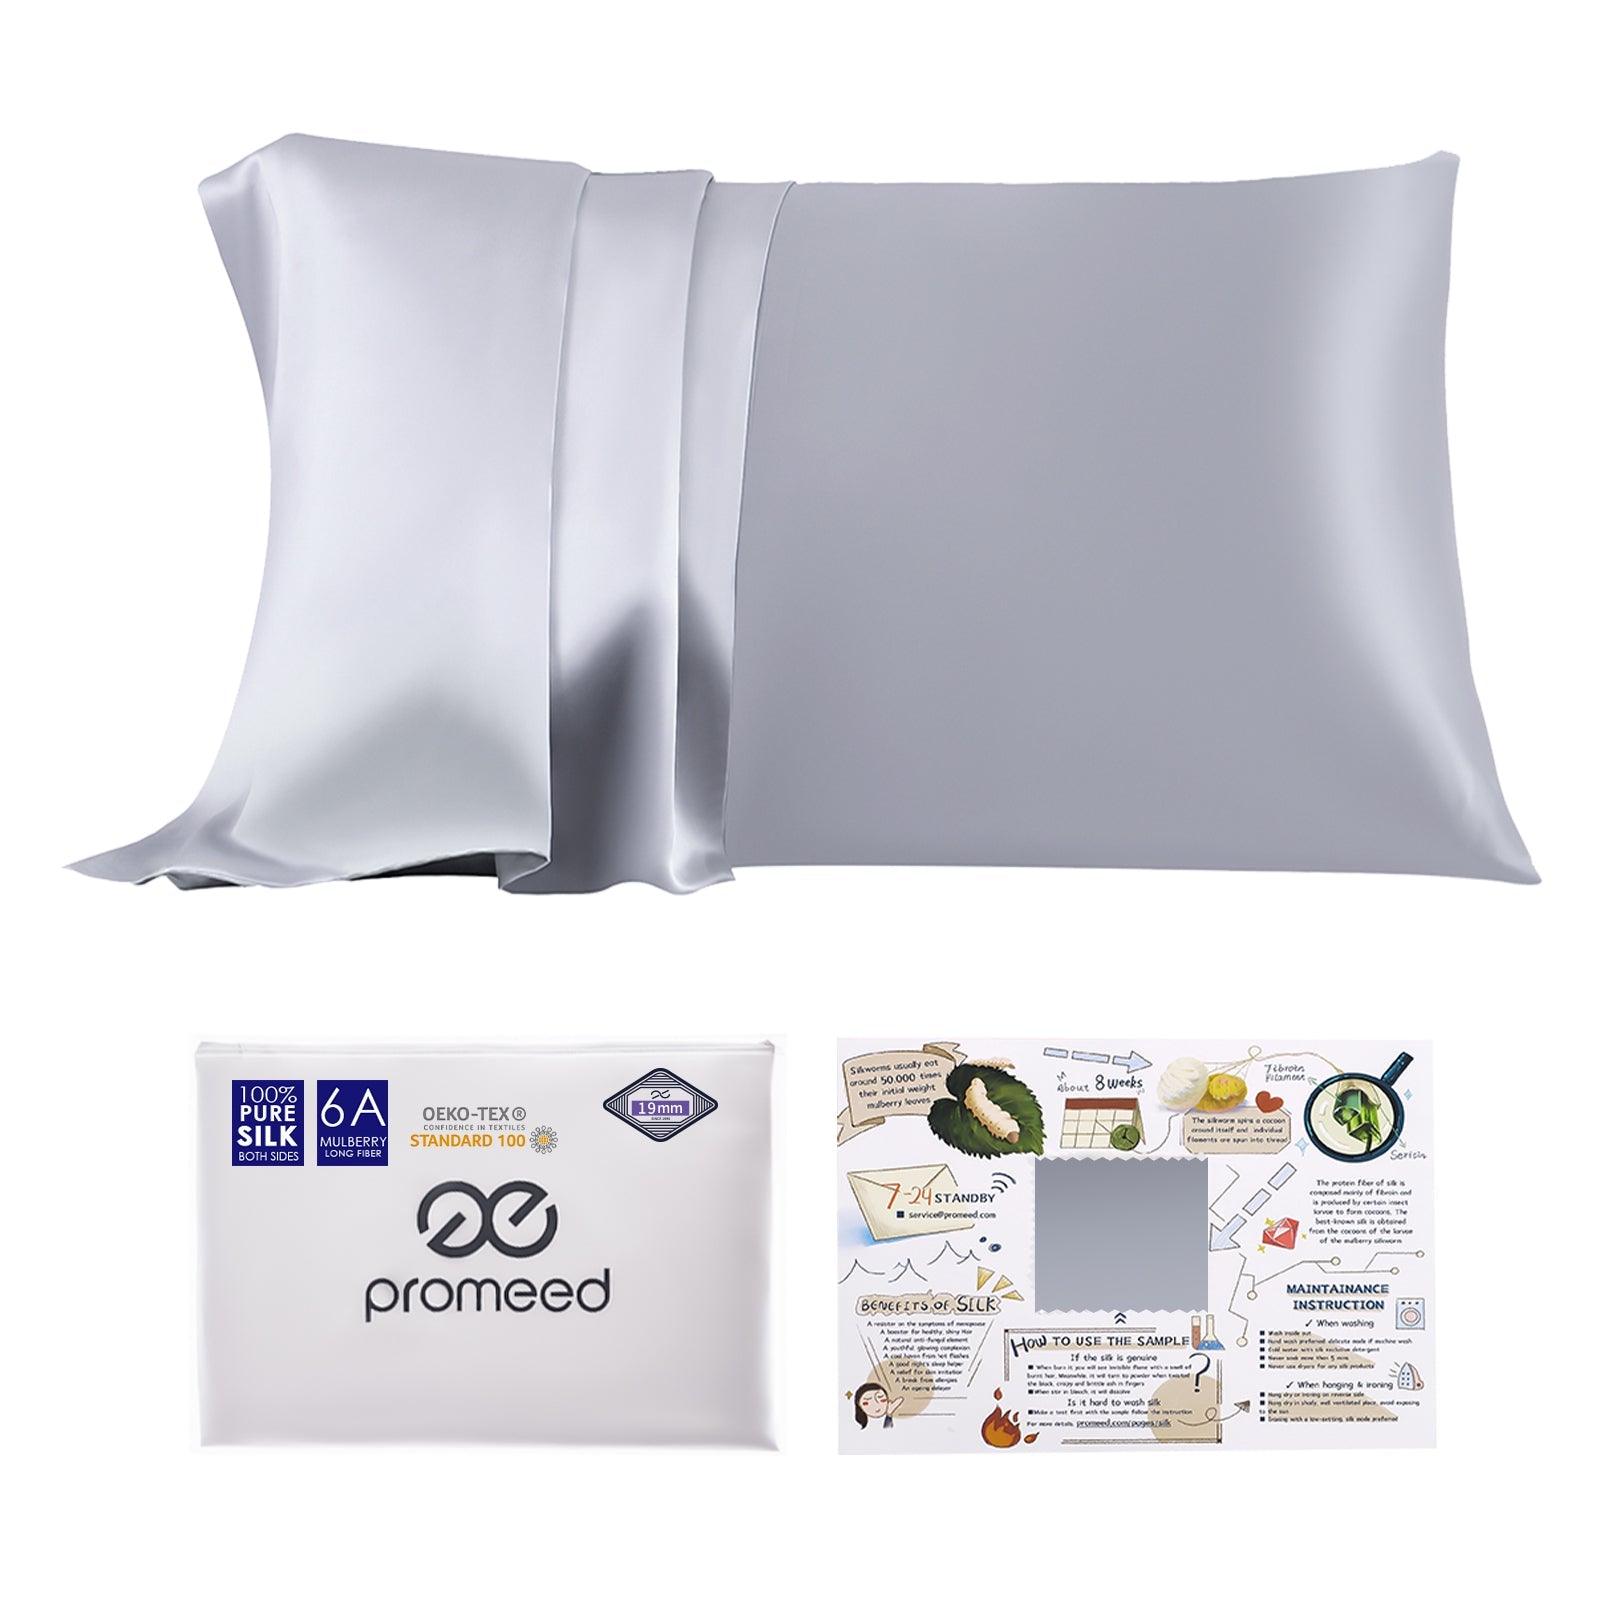 6A Mulberry Silk Pillow Cover - promeedsilk